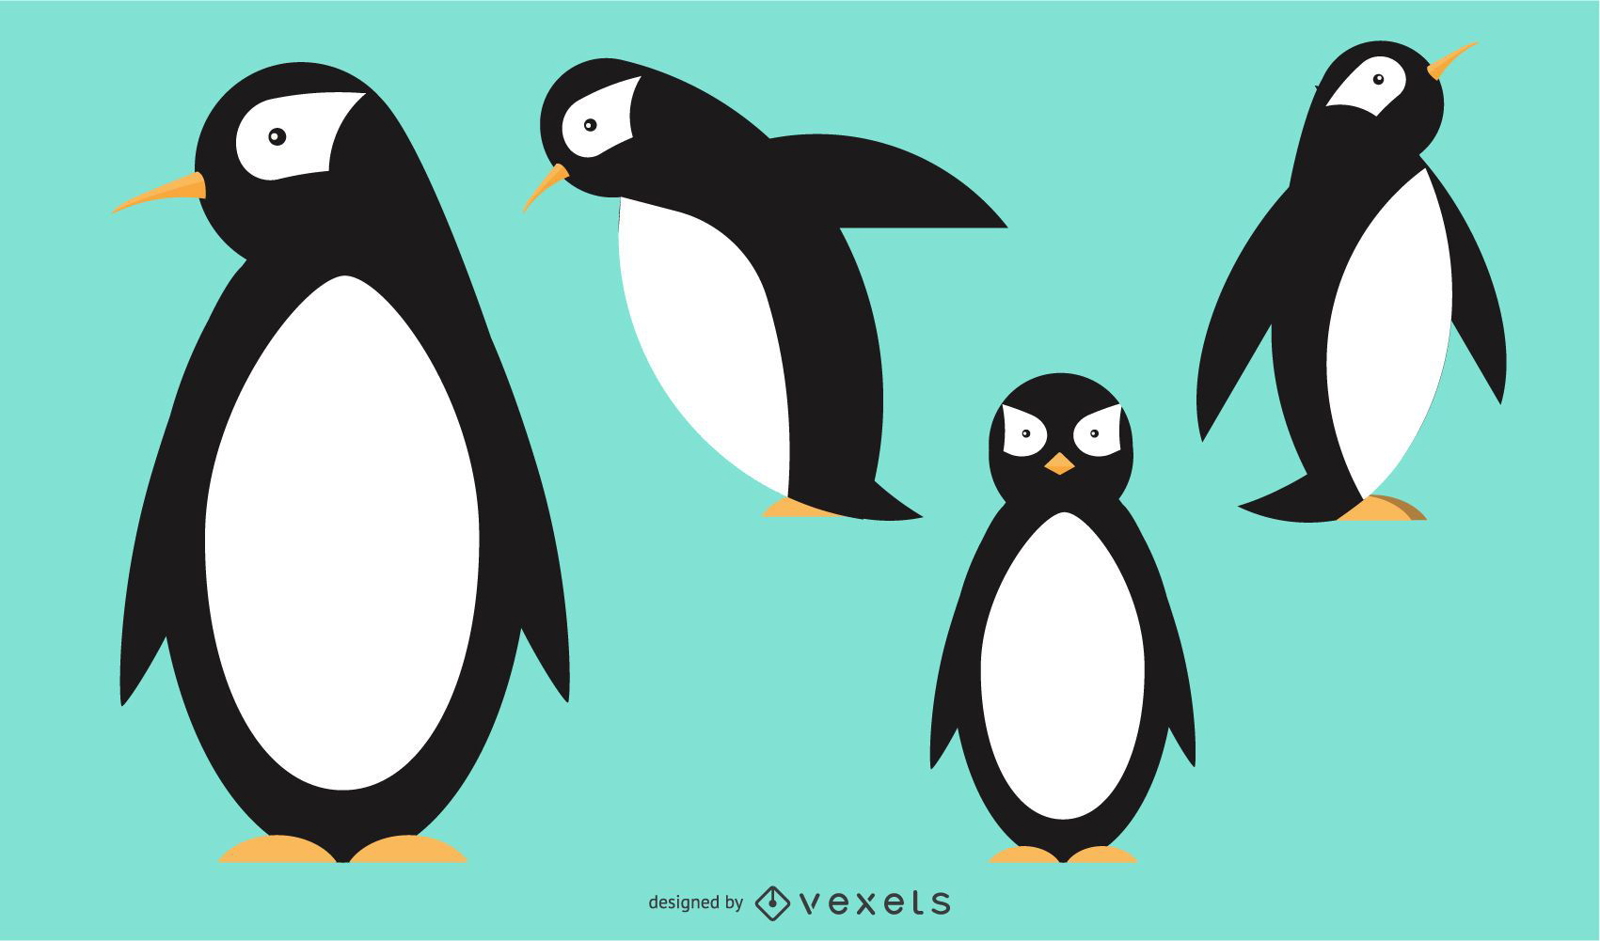 Abgerundeter geometrischer Vektorentwurf des Pinguins